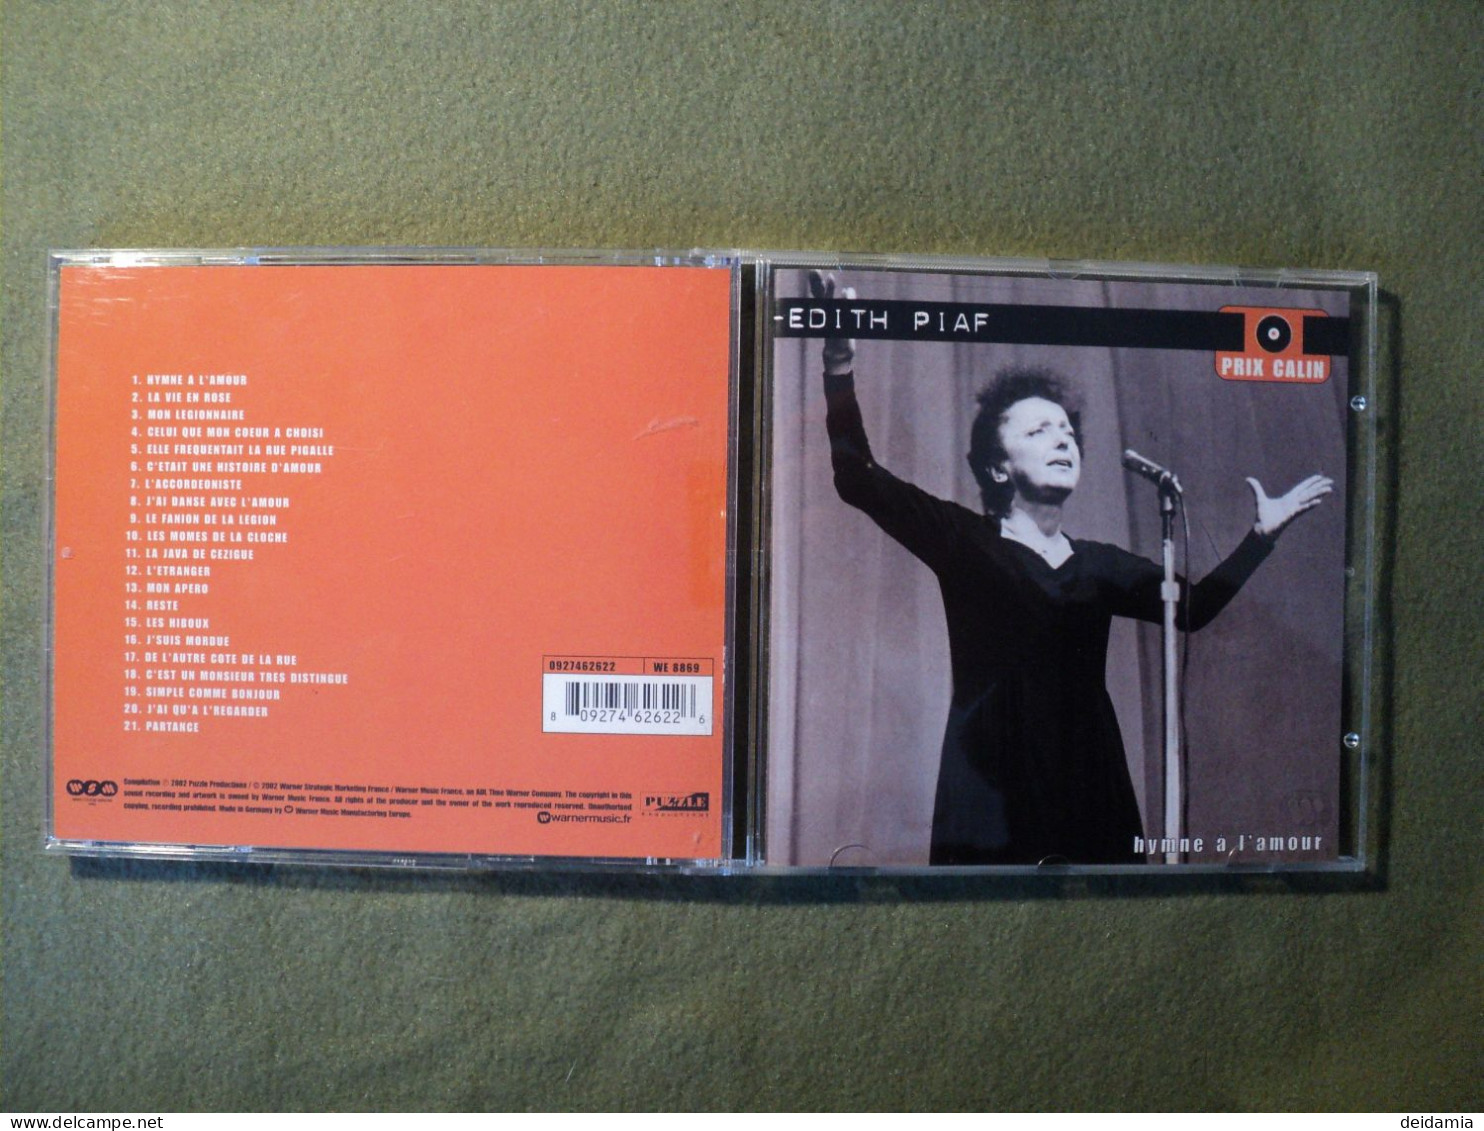 EDITH PIAF. CD 21 TITRES DE 2002. HYMNE A L AMOUR. WARNER 0927462622 HYMNE A L AMOUR / LA VIE EN ROSE / MON LEGIONNAIRE - Autres - Musique Française